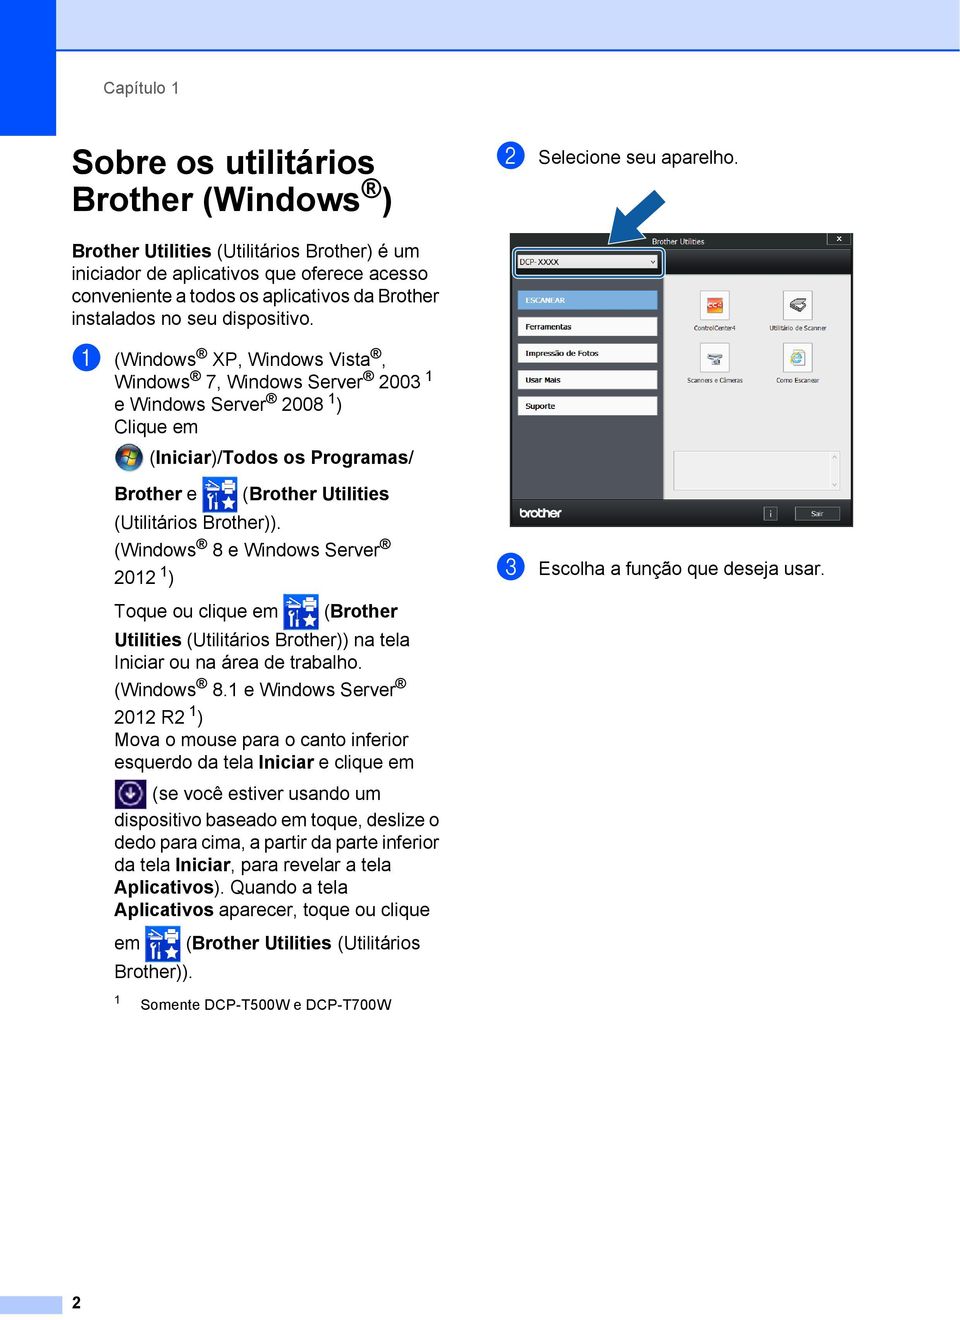 a (Windows XP, Windows Vista, Windows 7, Windows Server 2003 1 e Windows Server 2008 1 ) Clique em (Iniciar)/Todos os Programas/ Brother e (Brother Utilities (Utilitários Brother)).